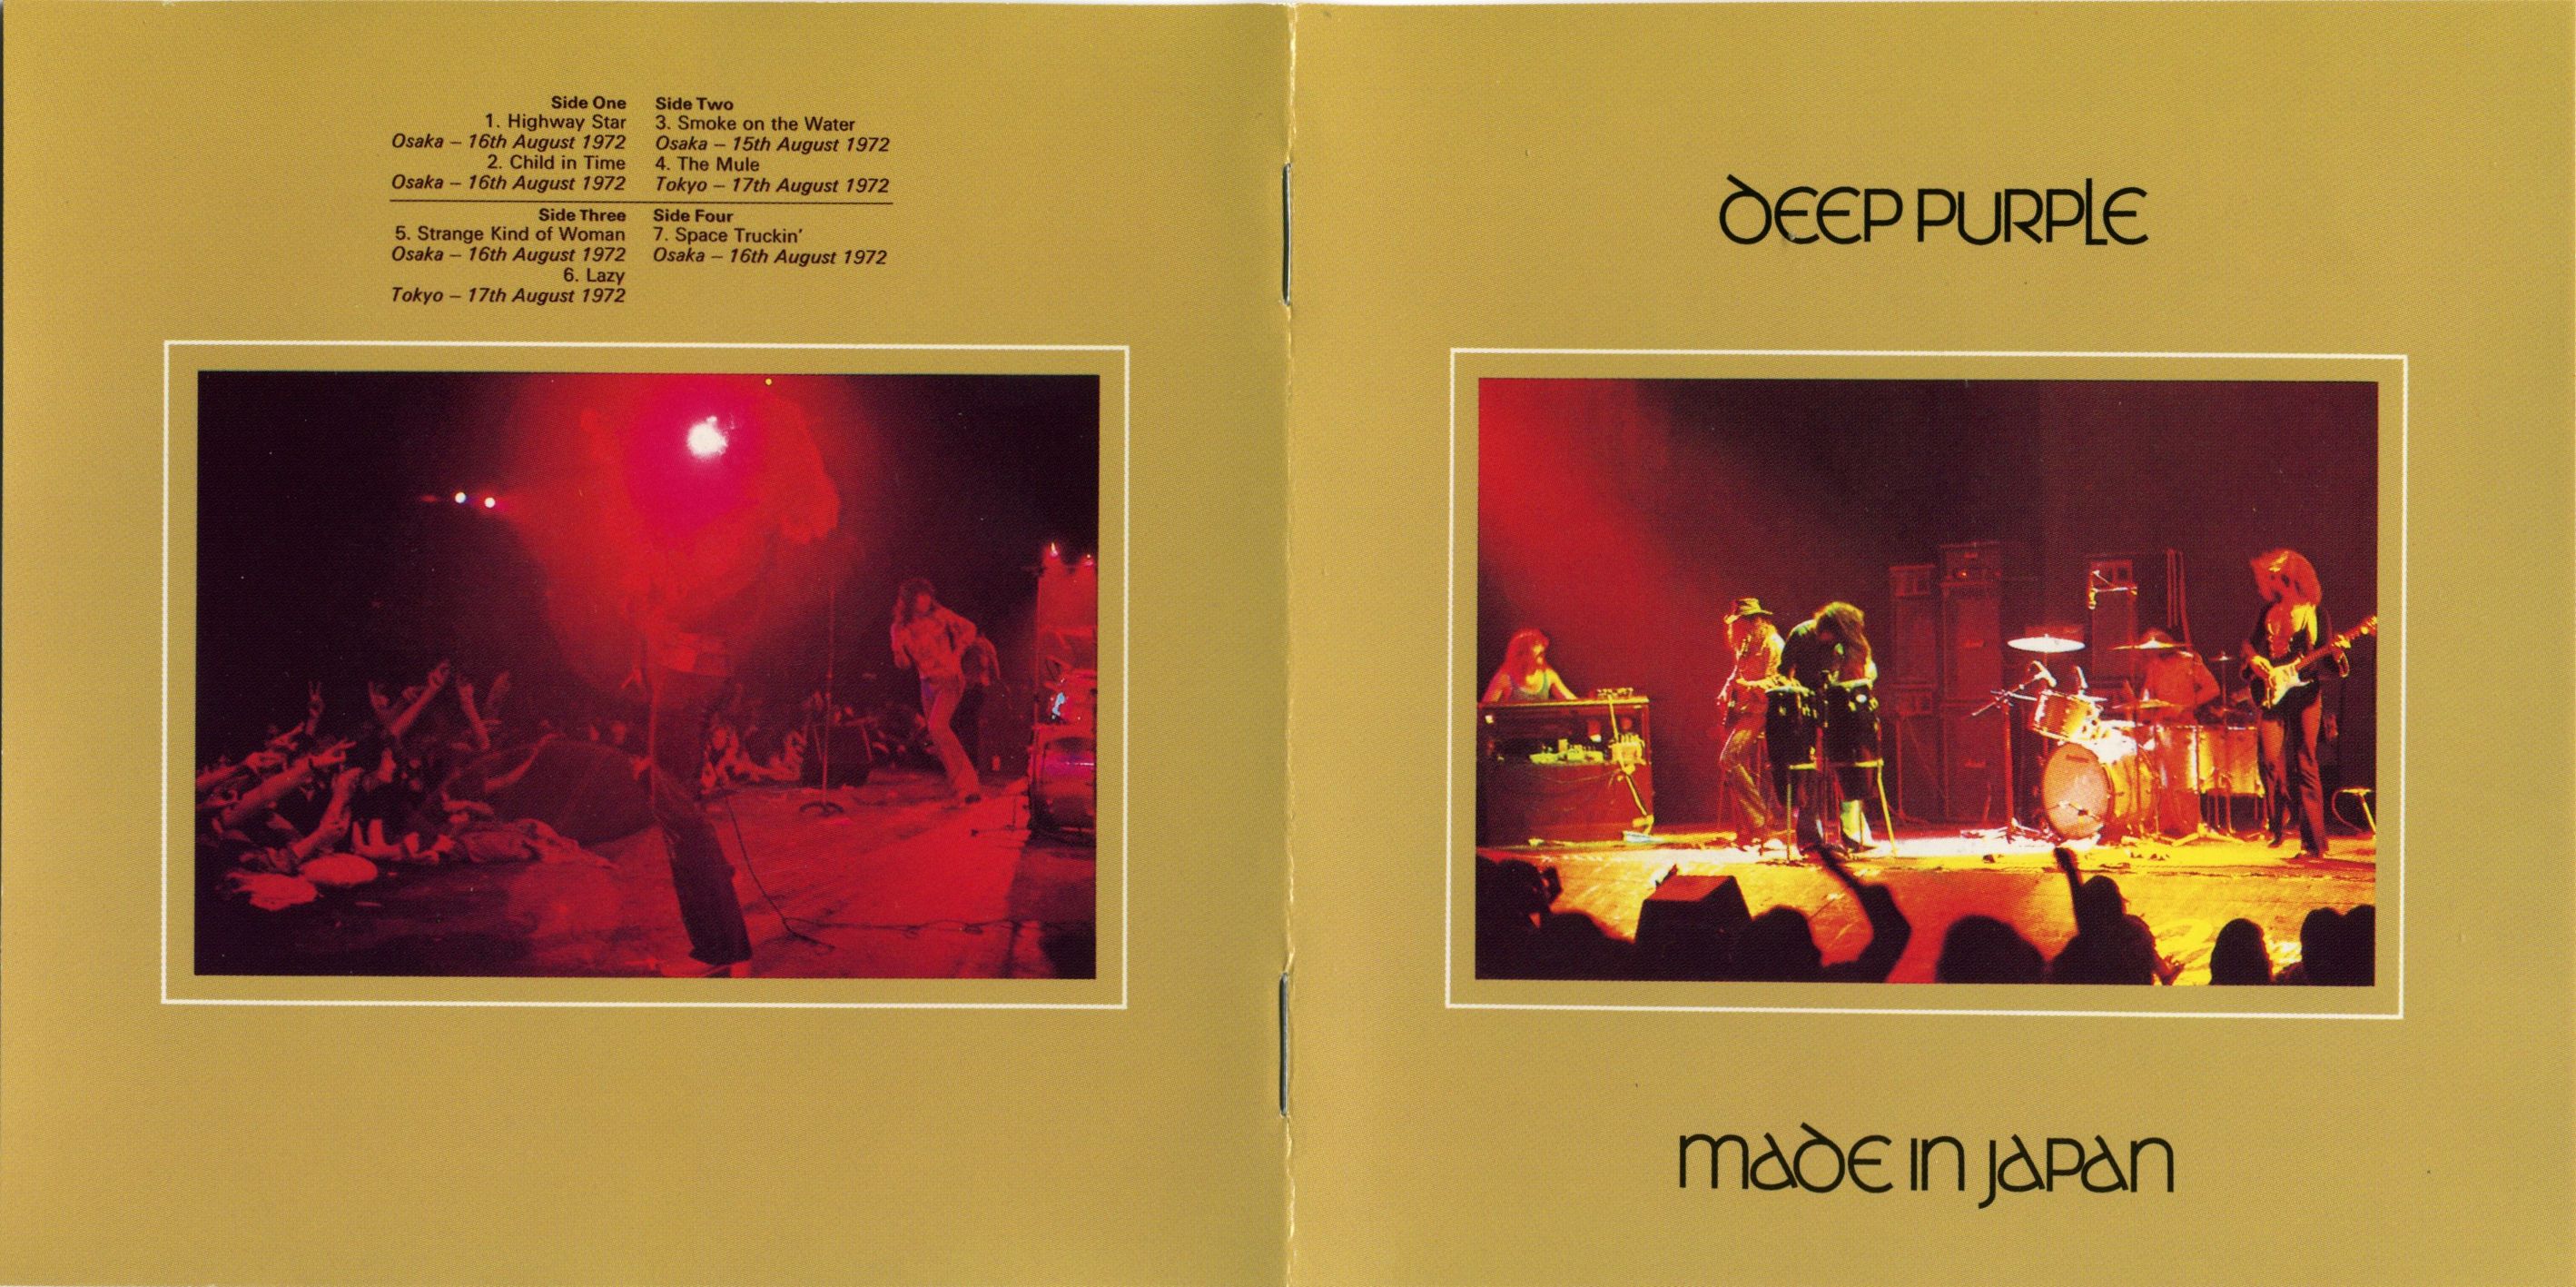 Made In Japan Deep Purple | Steve Hoffman Music Forums